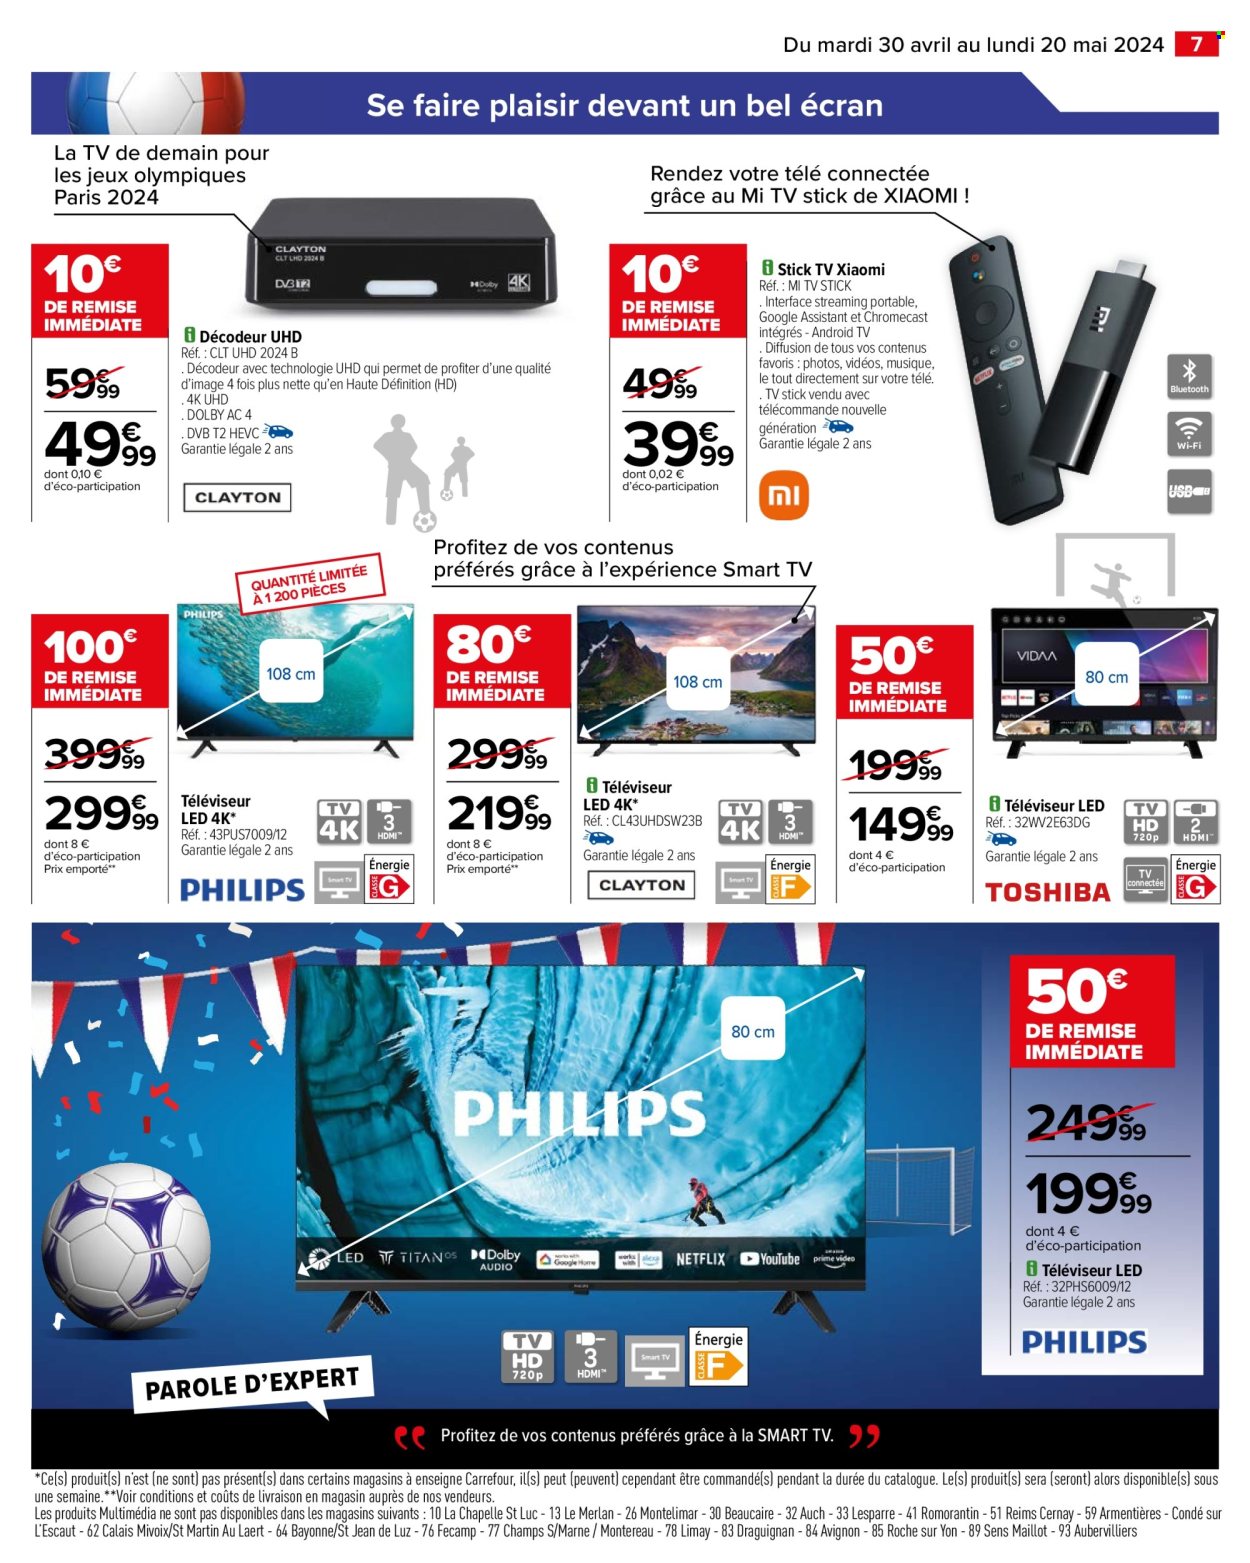 thumbnail - Catalogue Carrefour Hypermarchés - 30/04/2024 - 20/05/2024 - Produits soldés - Xiaomi, téléviseur, Toshiba, téléviseur LED, Philips. Page 9.